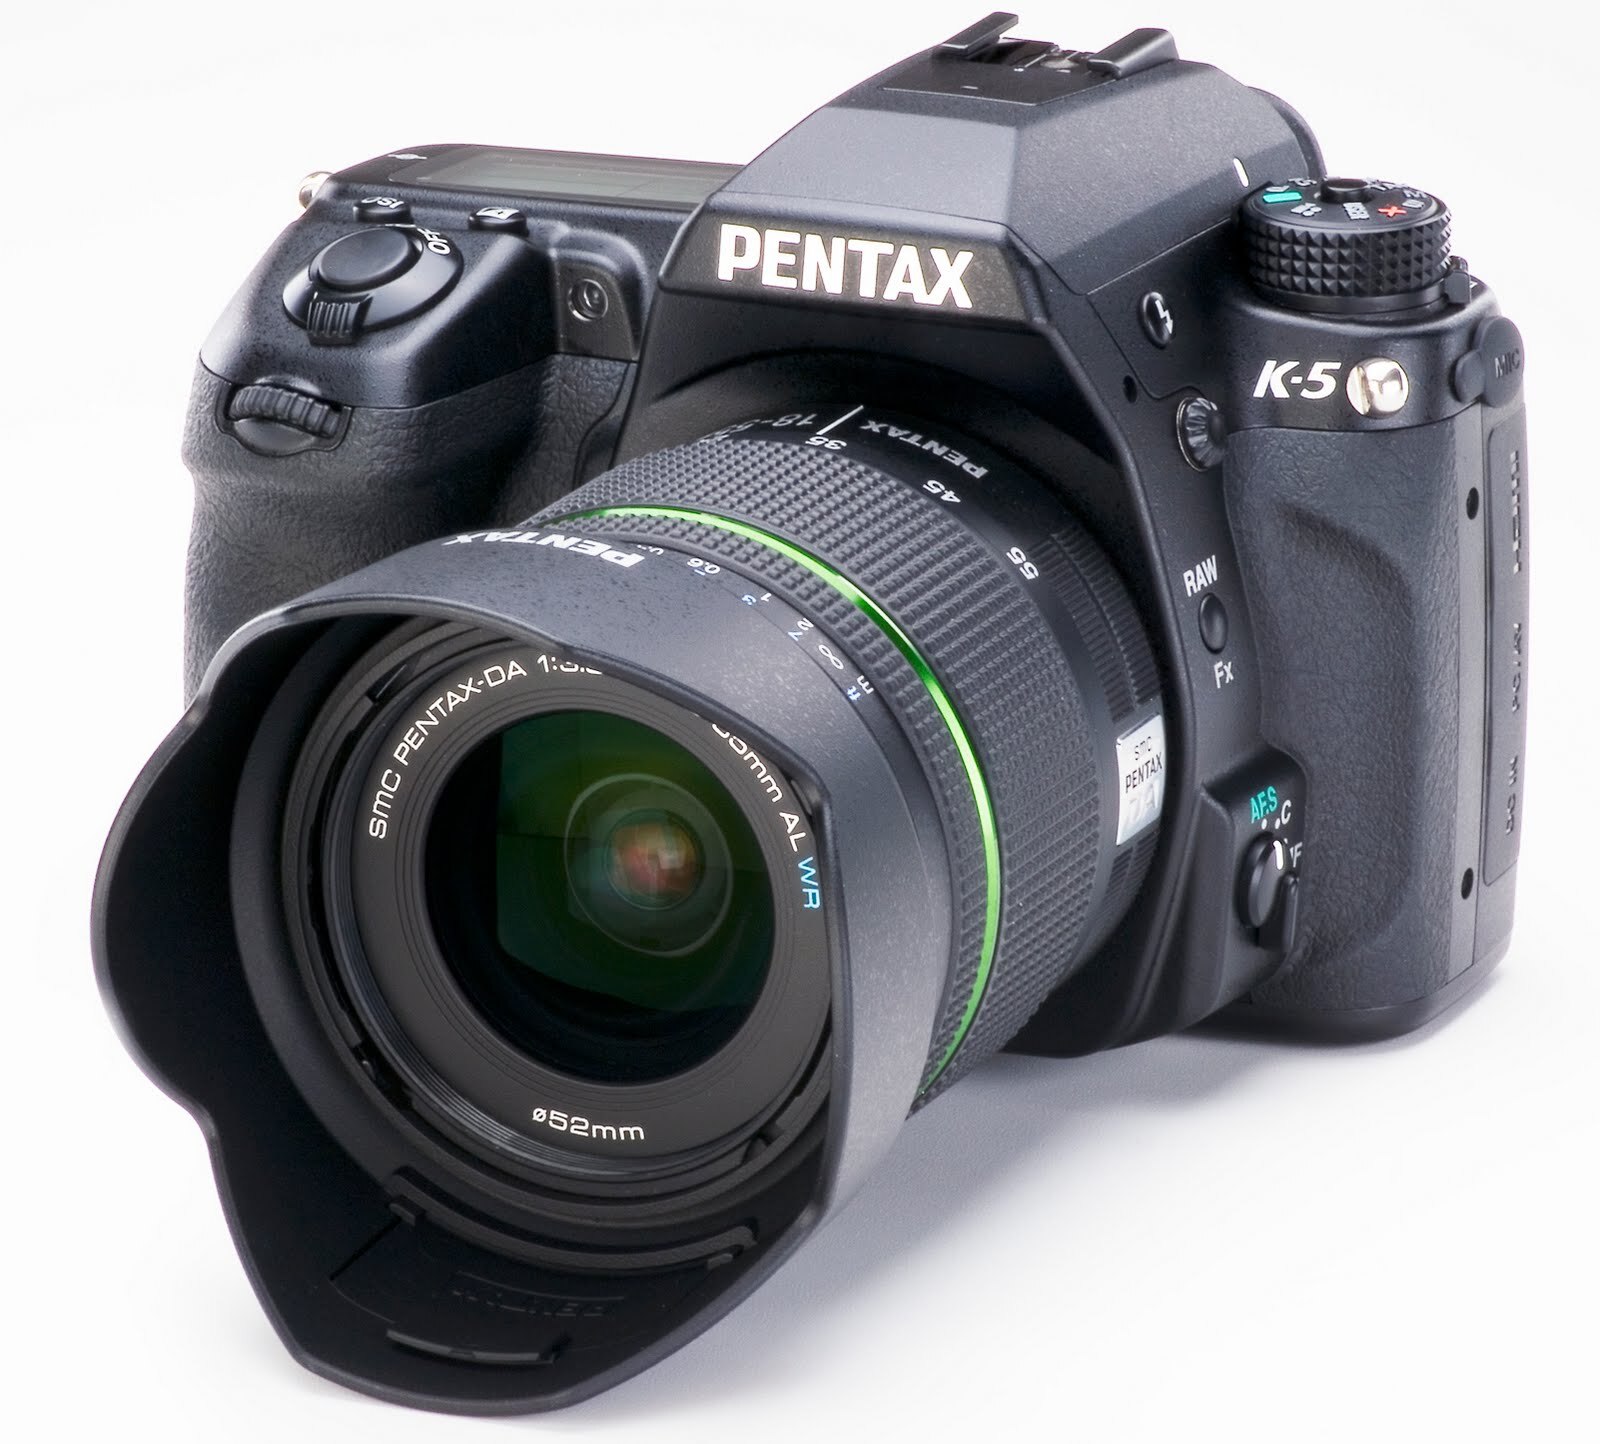 Máy ảnh DSLR Pentax K-5 Body - 4928 x 3264 pixels